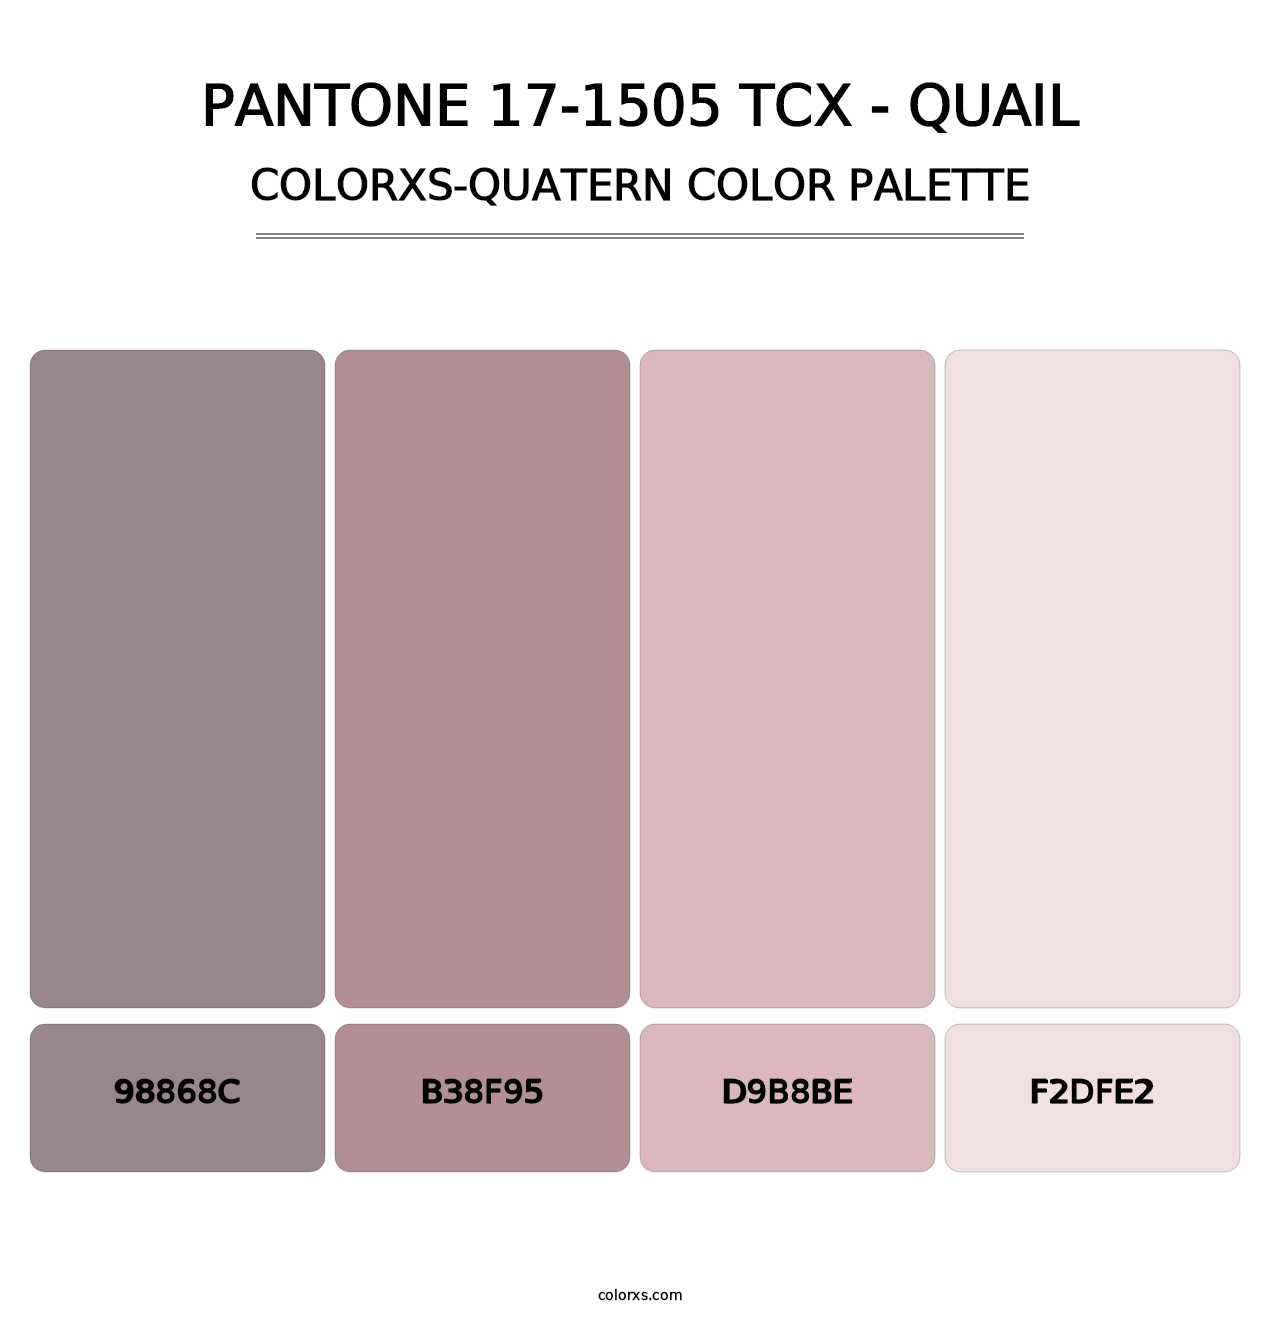 PANTONE 17-1505 TCX - Quail - Colorxs Quatern Palette